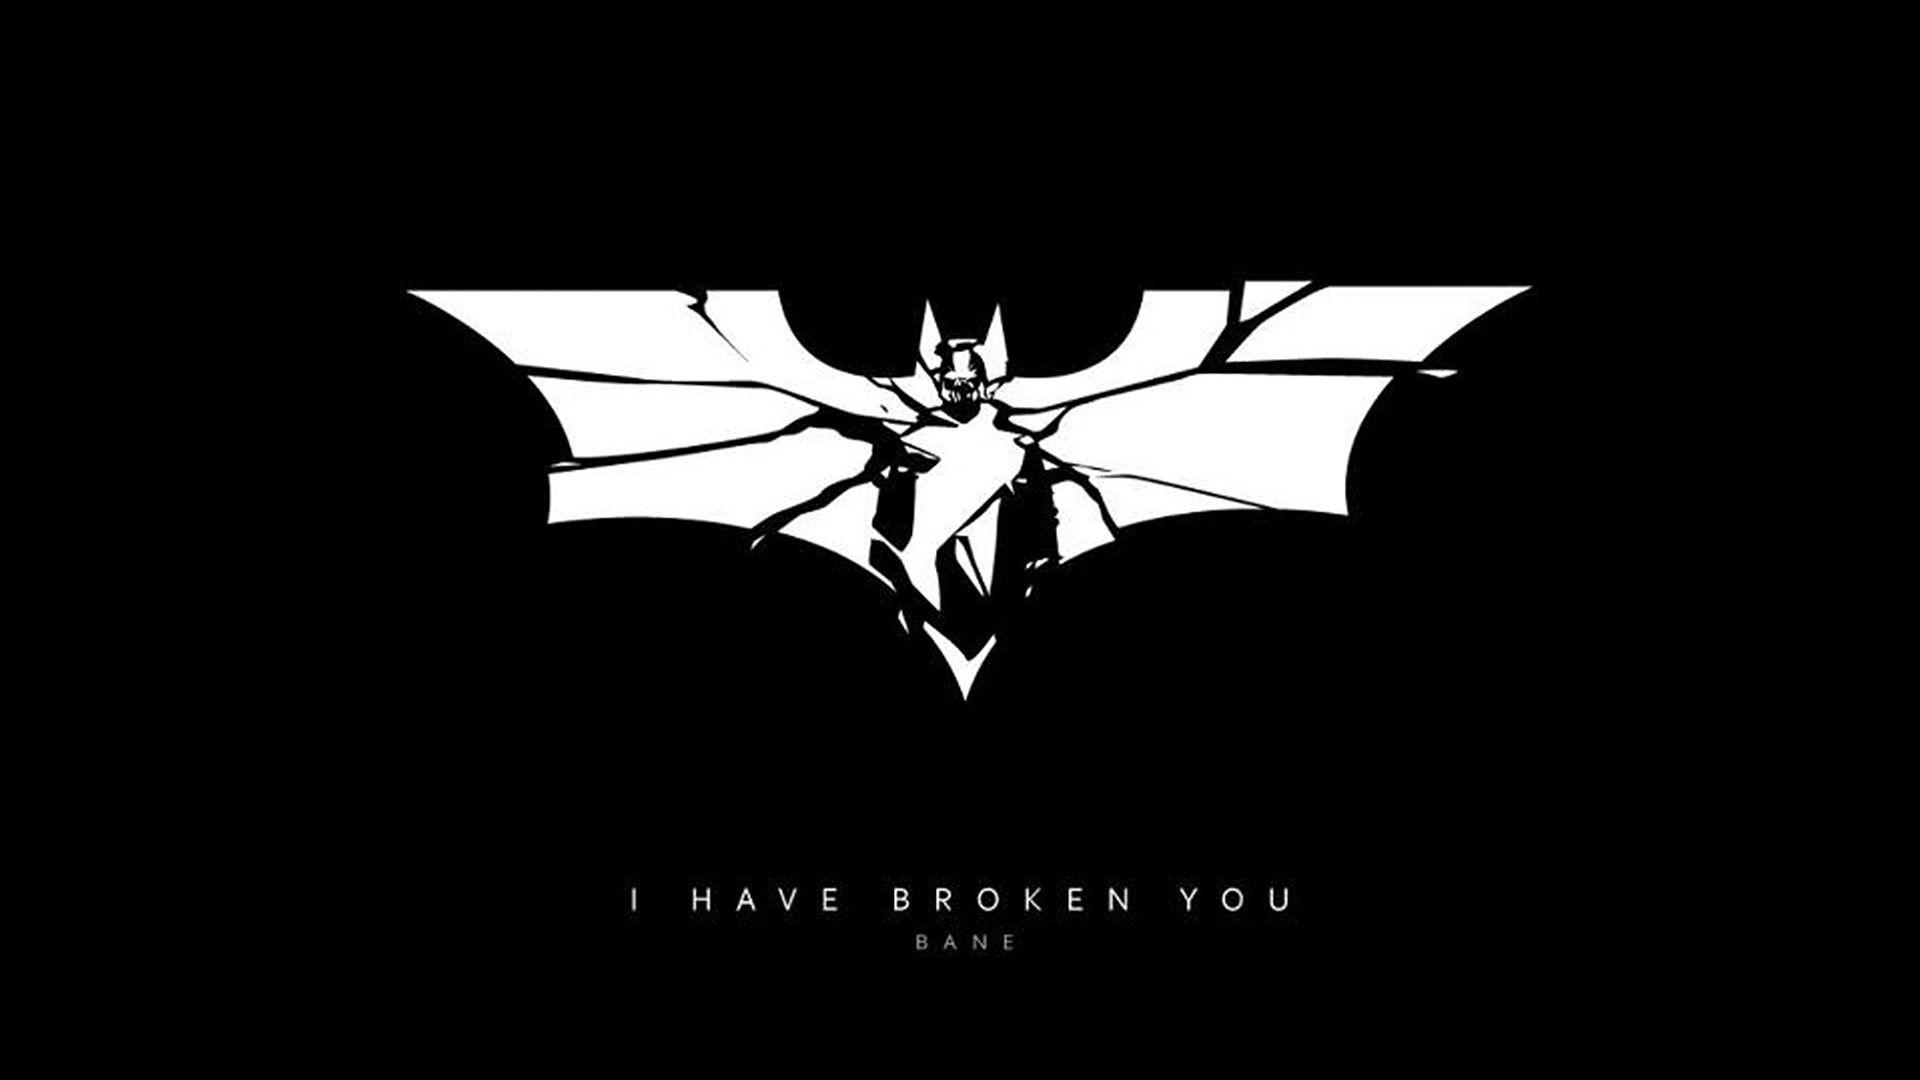 Broken Batman Logo - Batman – I have broken you | Zoom Comics - Daily Comic Book Wallpapers